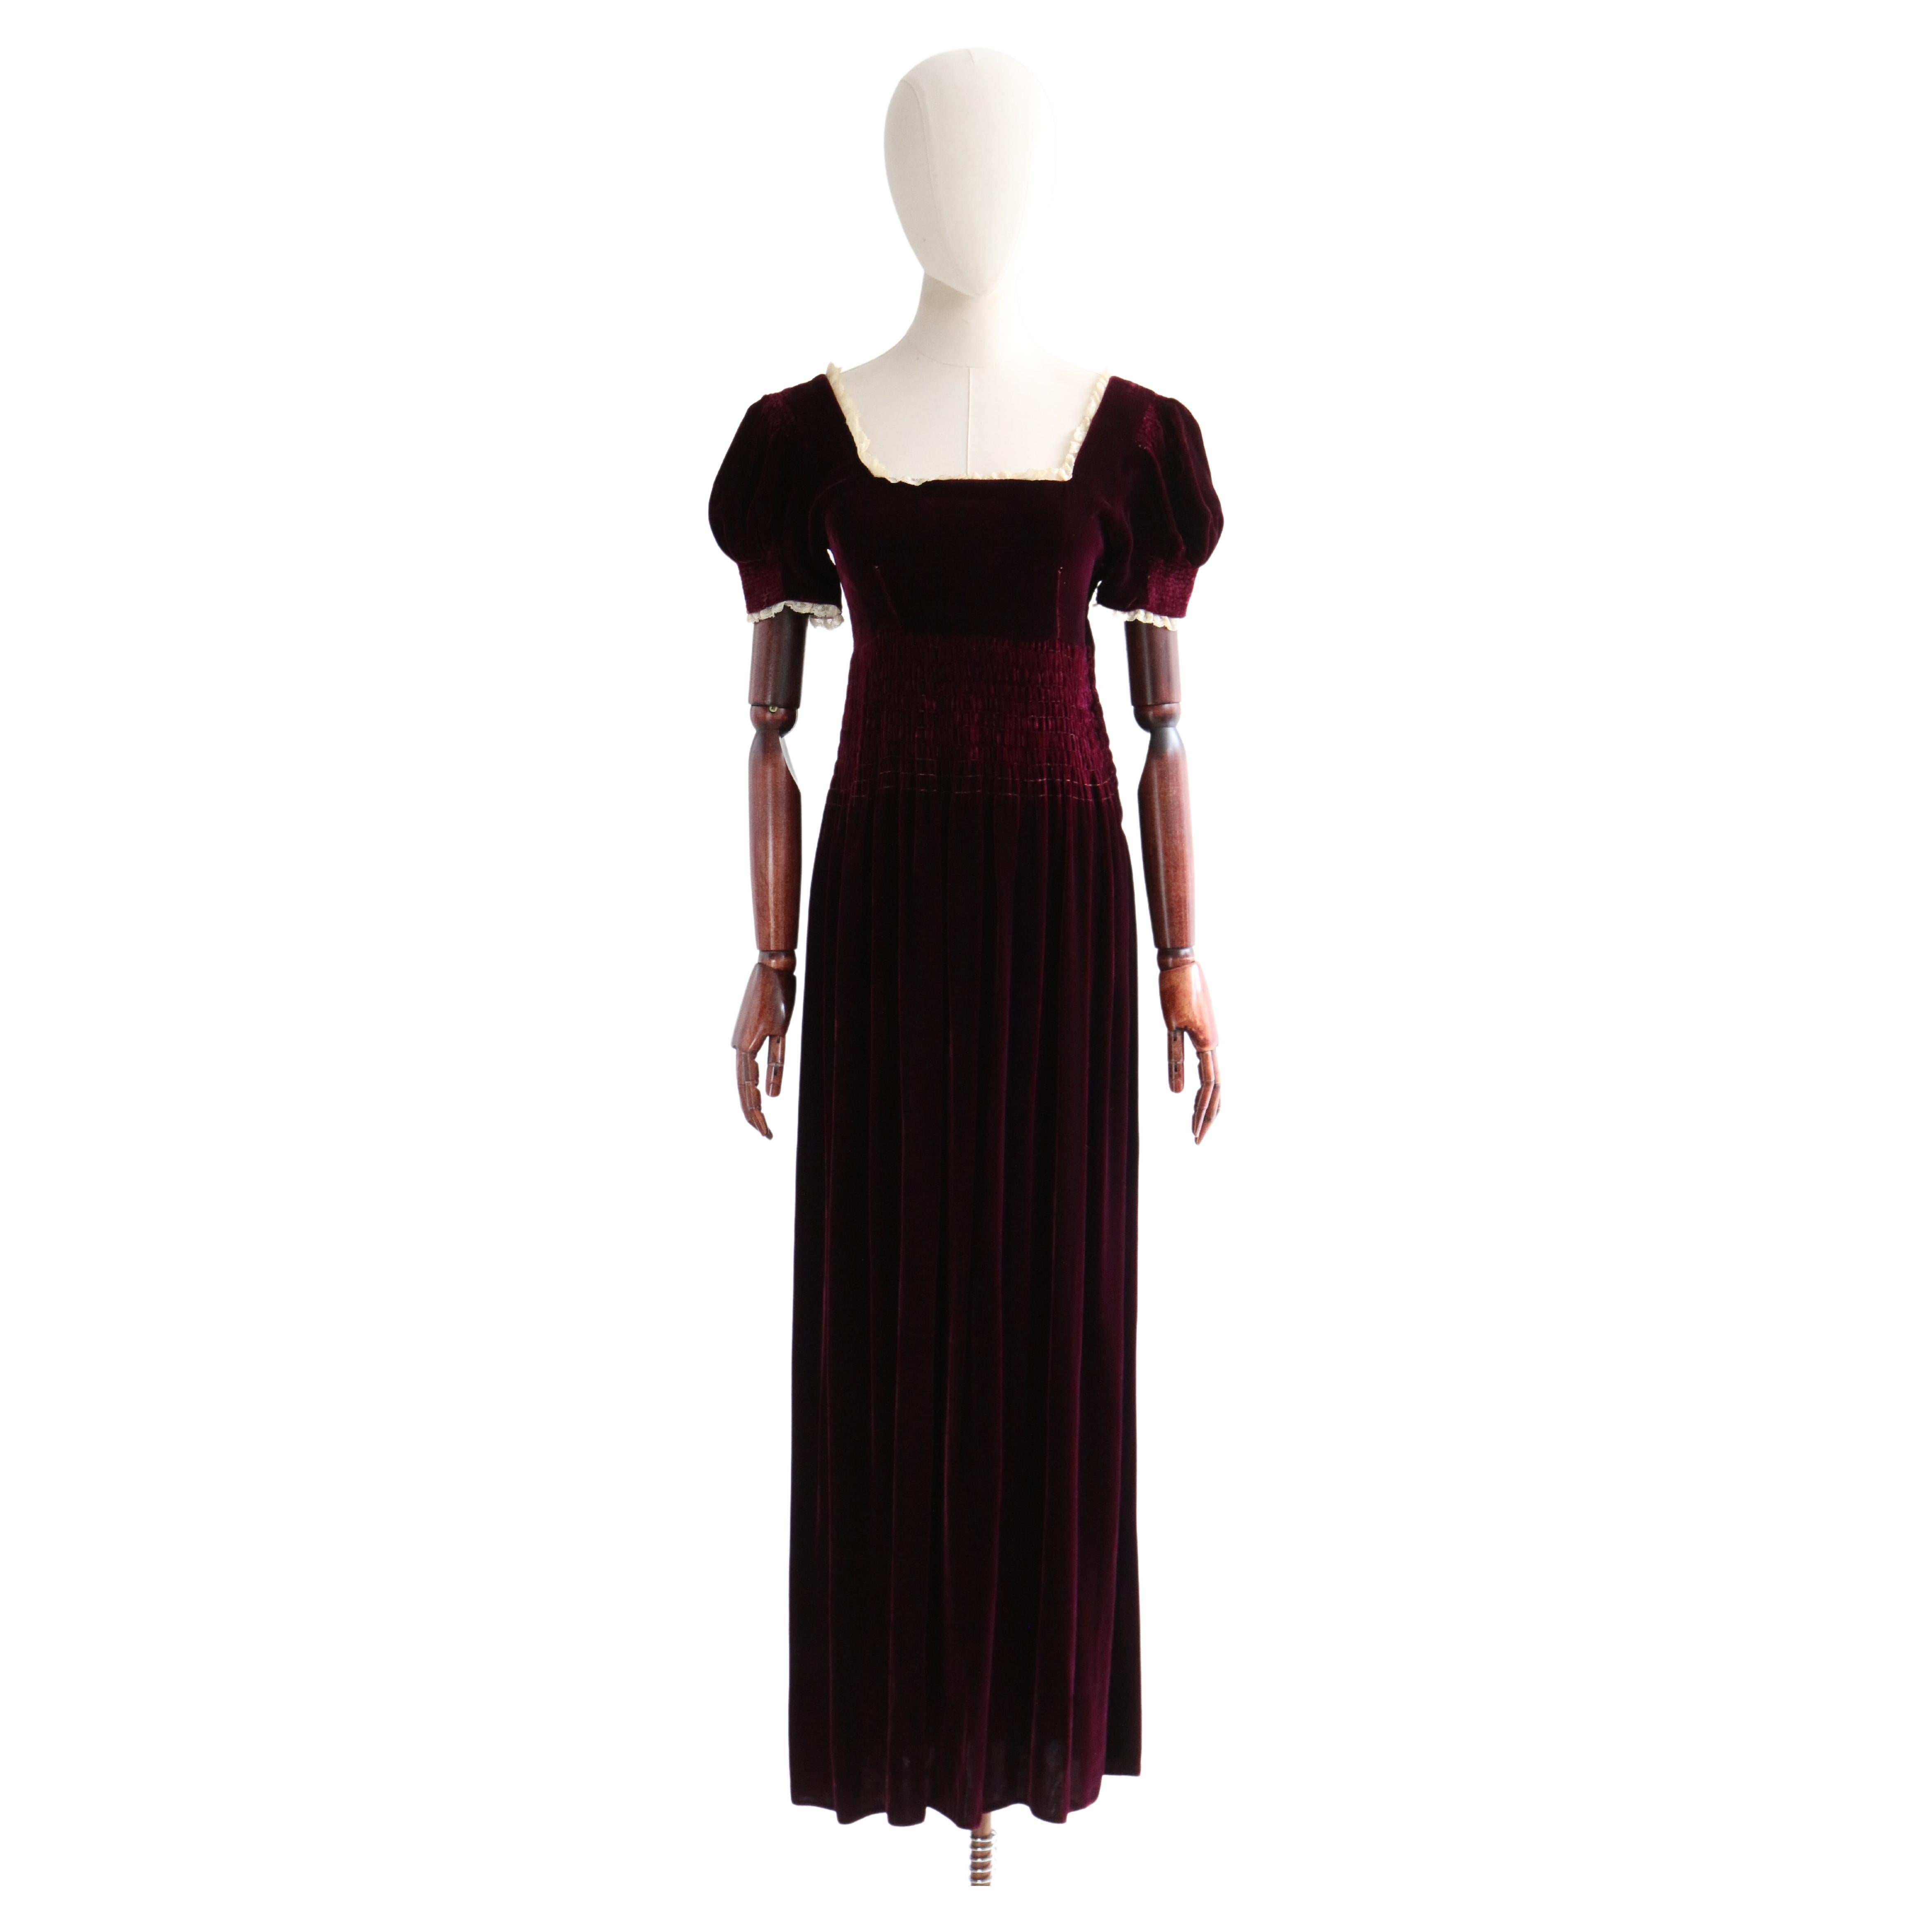 Vintage-Kleid aus burgunderrotem Seidensamt aus den 1930er Jahren UK 6-8 US 2-4